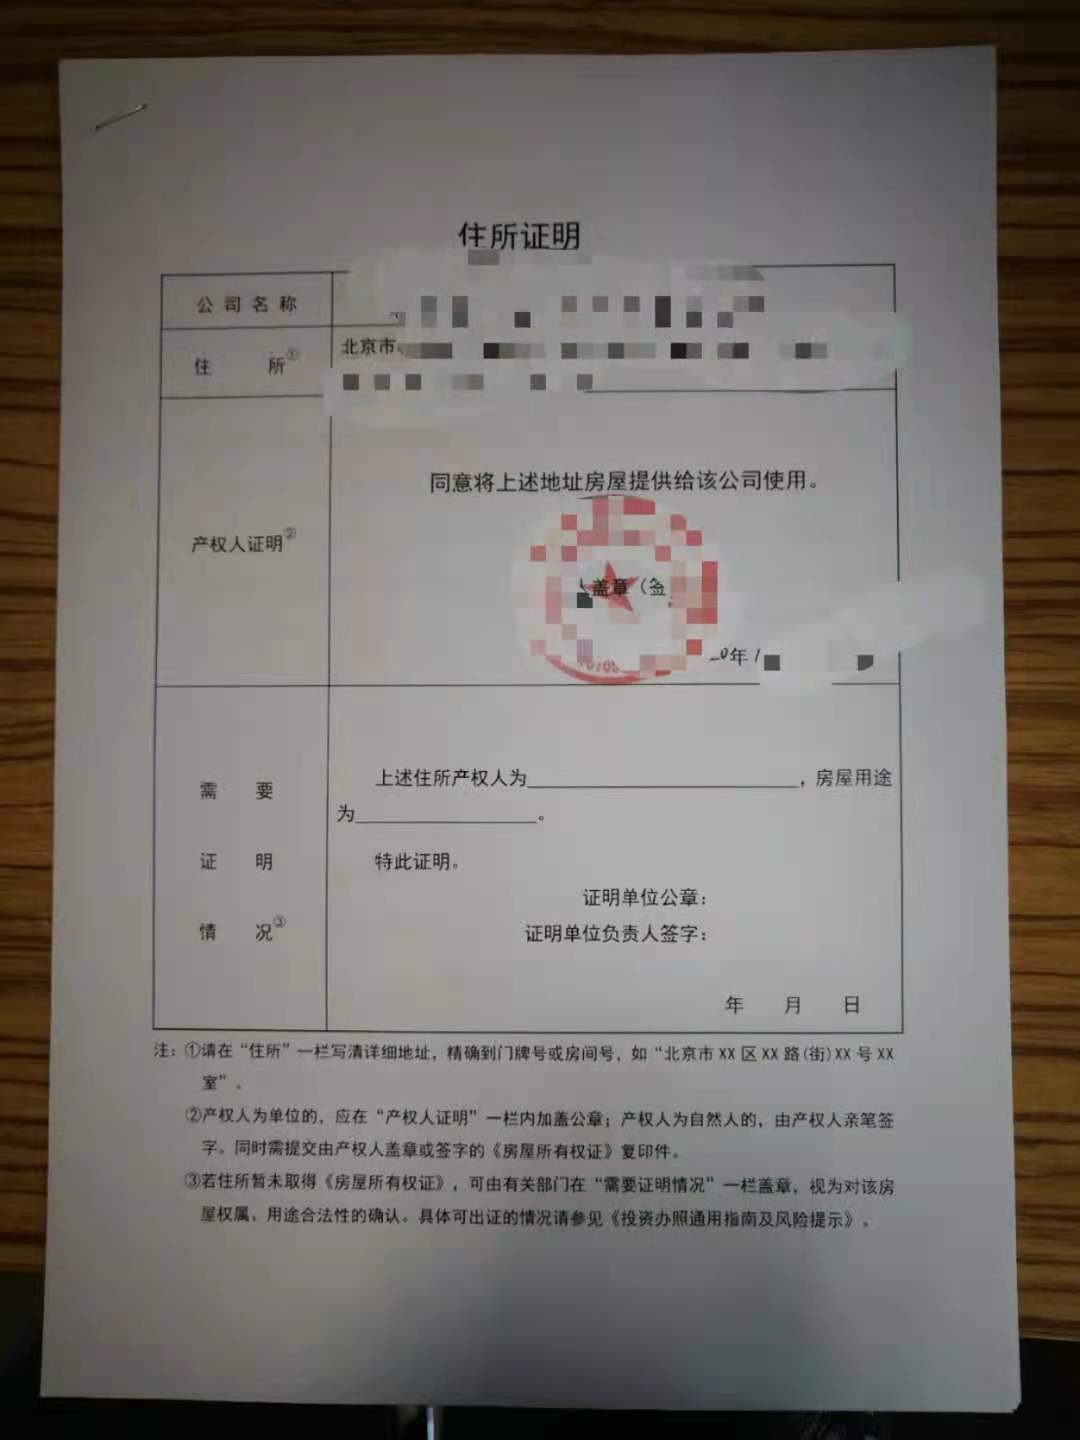 公司注册北京注册地址解异常地址注册地址